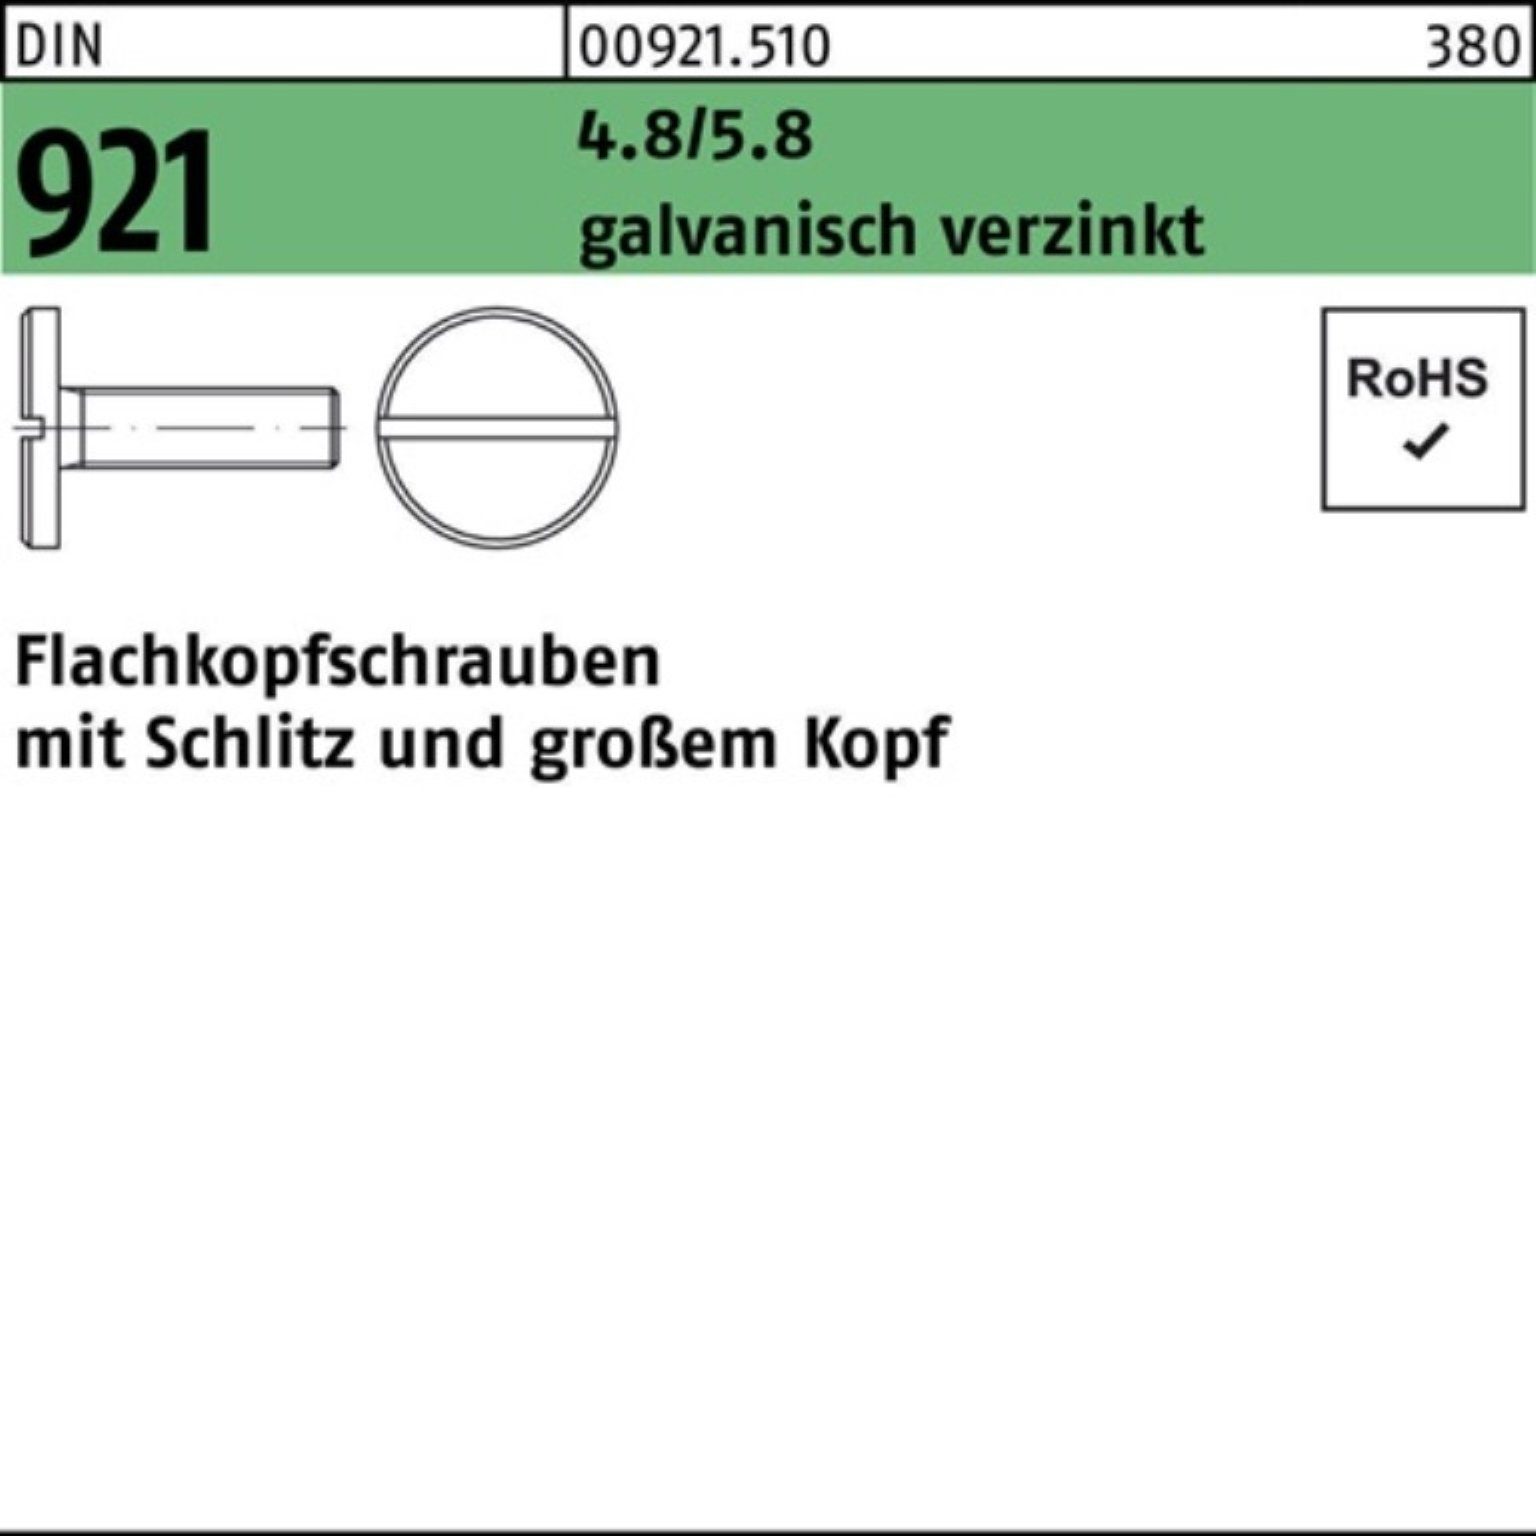 M5x Flachkopfschraube galv.verz. Schlitz DIN Reyher 921 Schraube 4.8/5.8 100er Pack 6